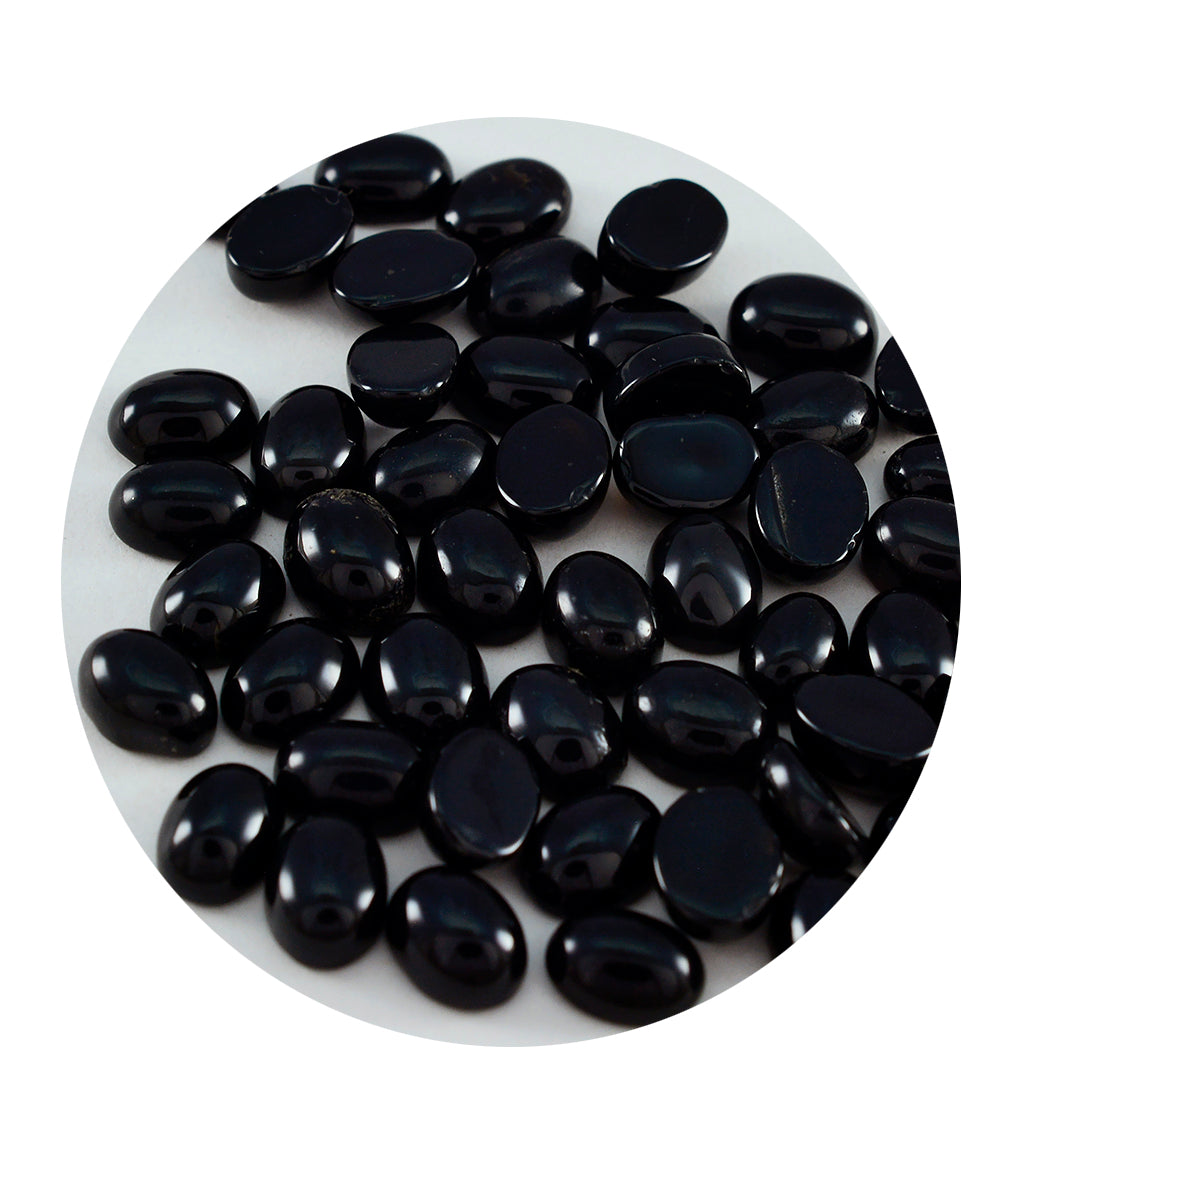 Riyogems 1 Stück schwarzer Onyx-Cabochon, 3 x 5 mm, ovale Form, hübscher Qualitäts-Edelstein